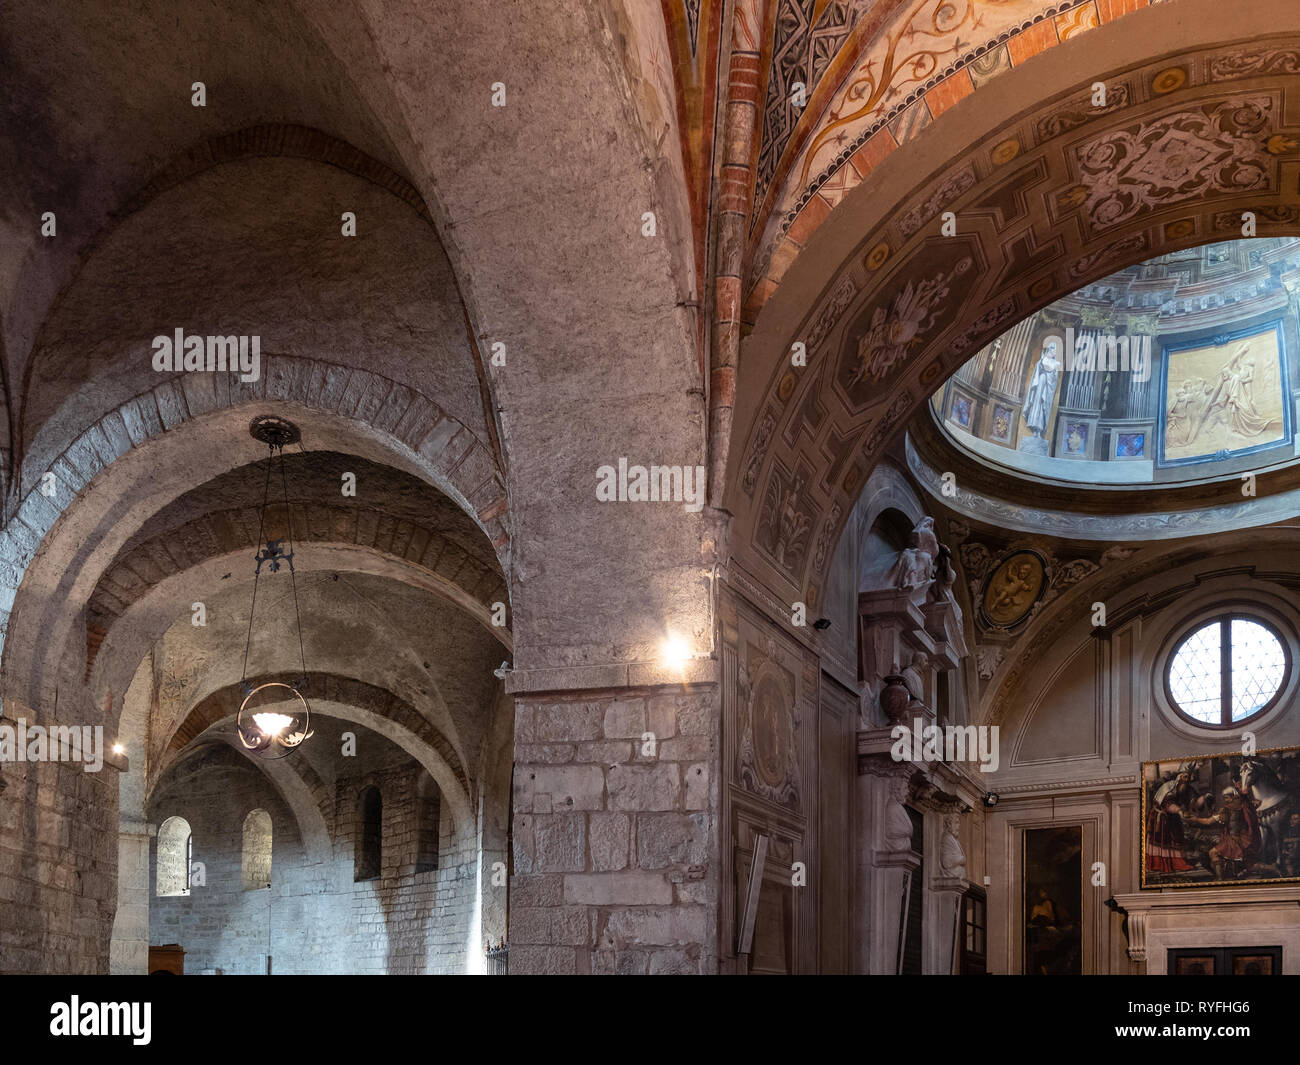 BRESCIA, ITALY - FEBRUARY 21, 2019: interior of Duomo Vecchio (The Old Cathedral, Rotonda, Concattedrale invernale di Santa Maria Assunta) in Brescia  Stock Photo